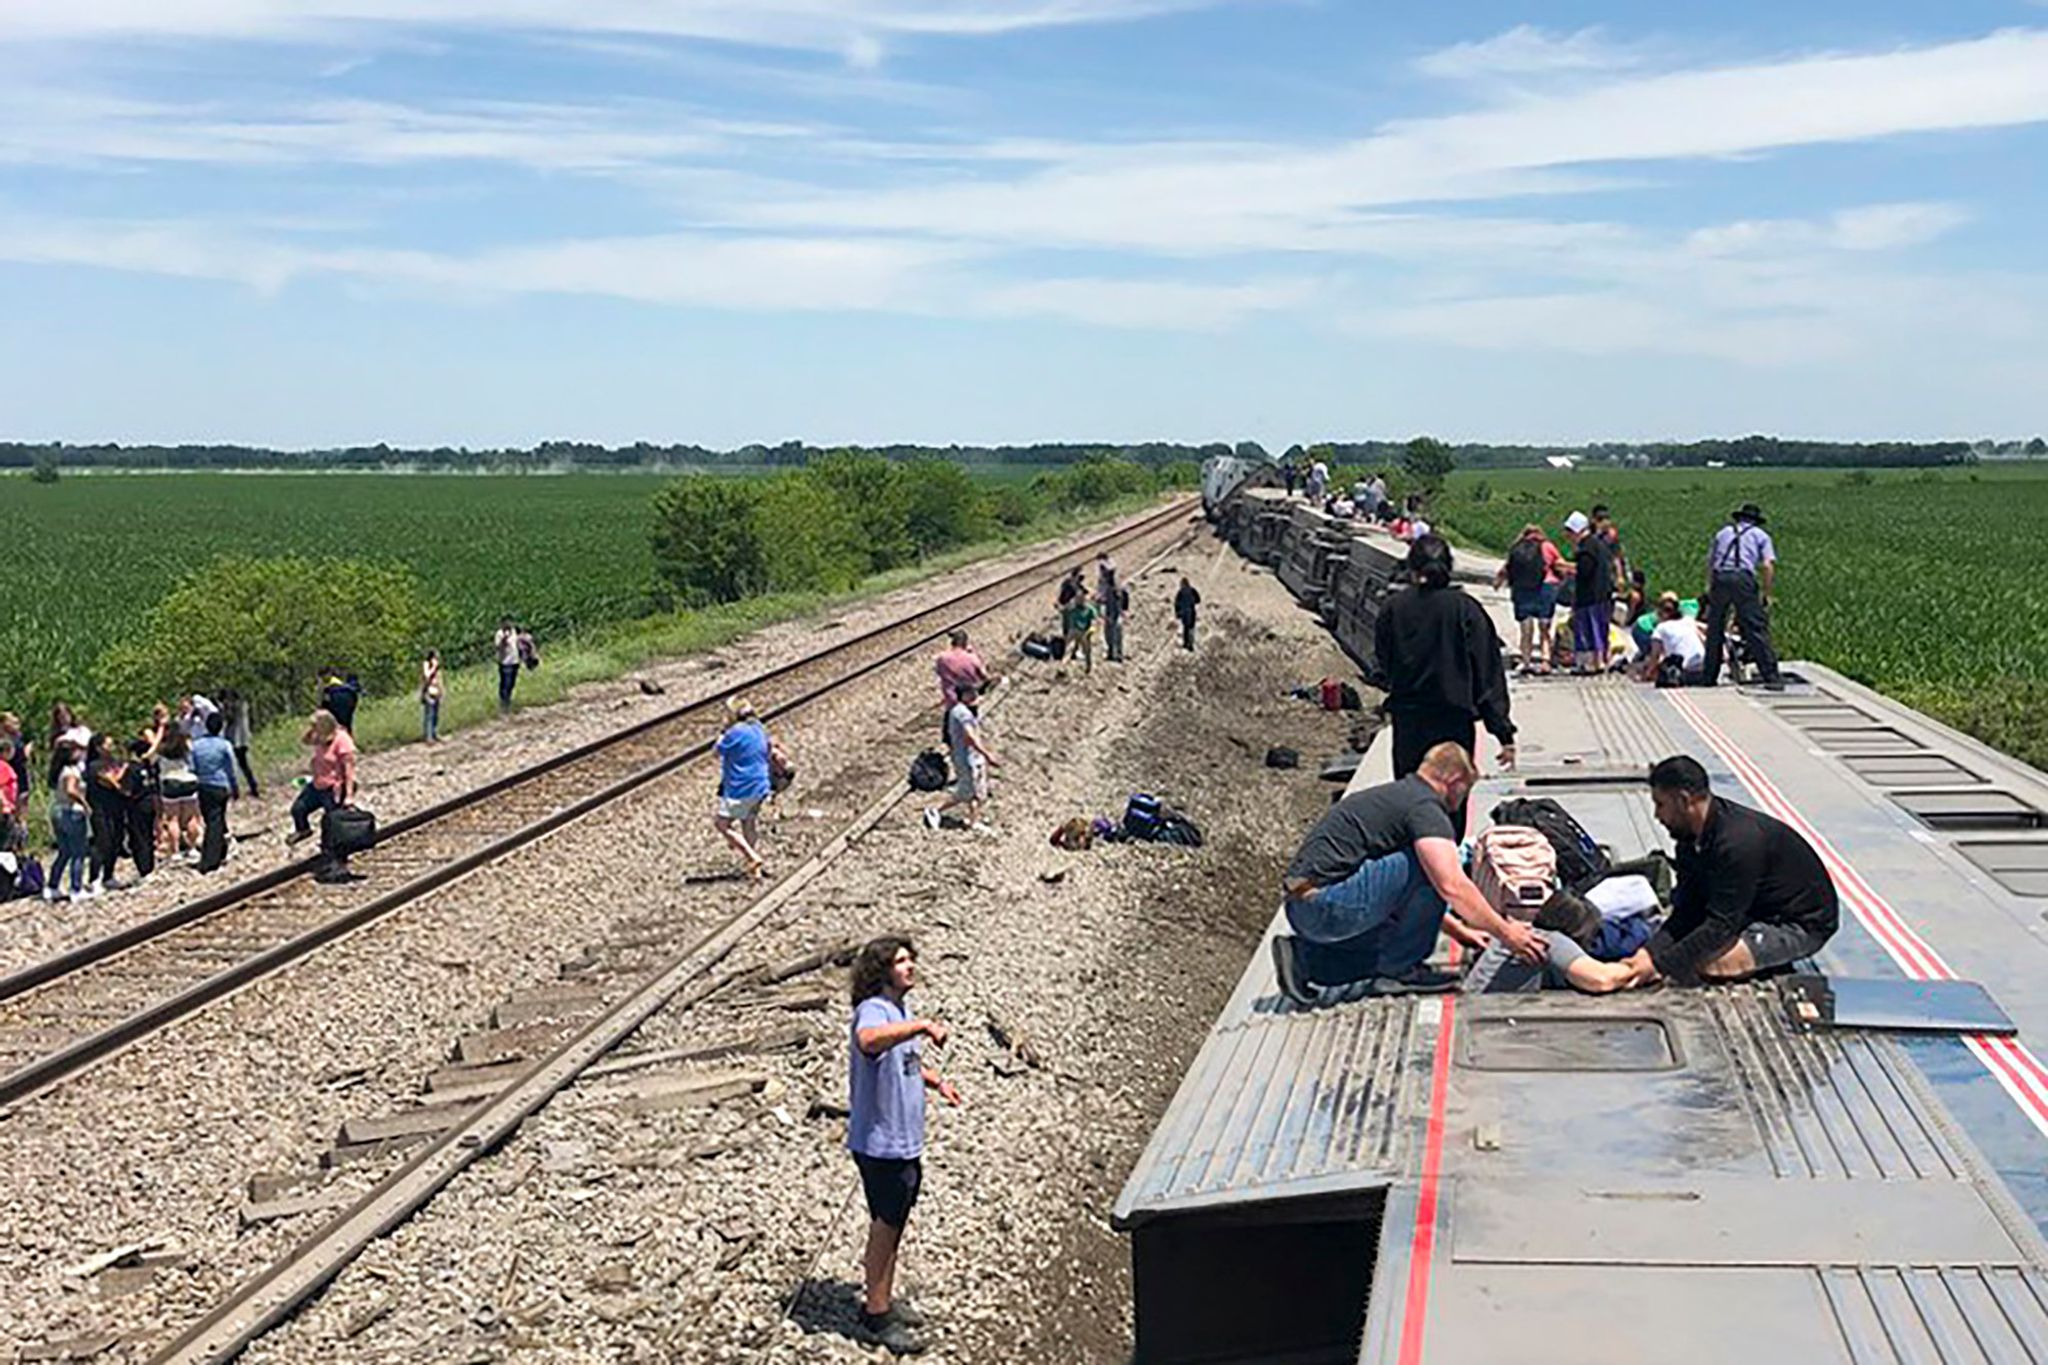 Zug mit mehr als 200 Passagieren entgleist – viele Tote und Verletzte